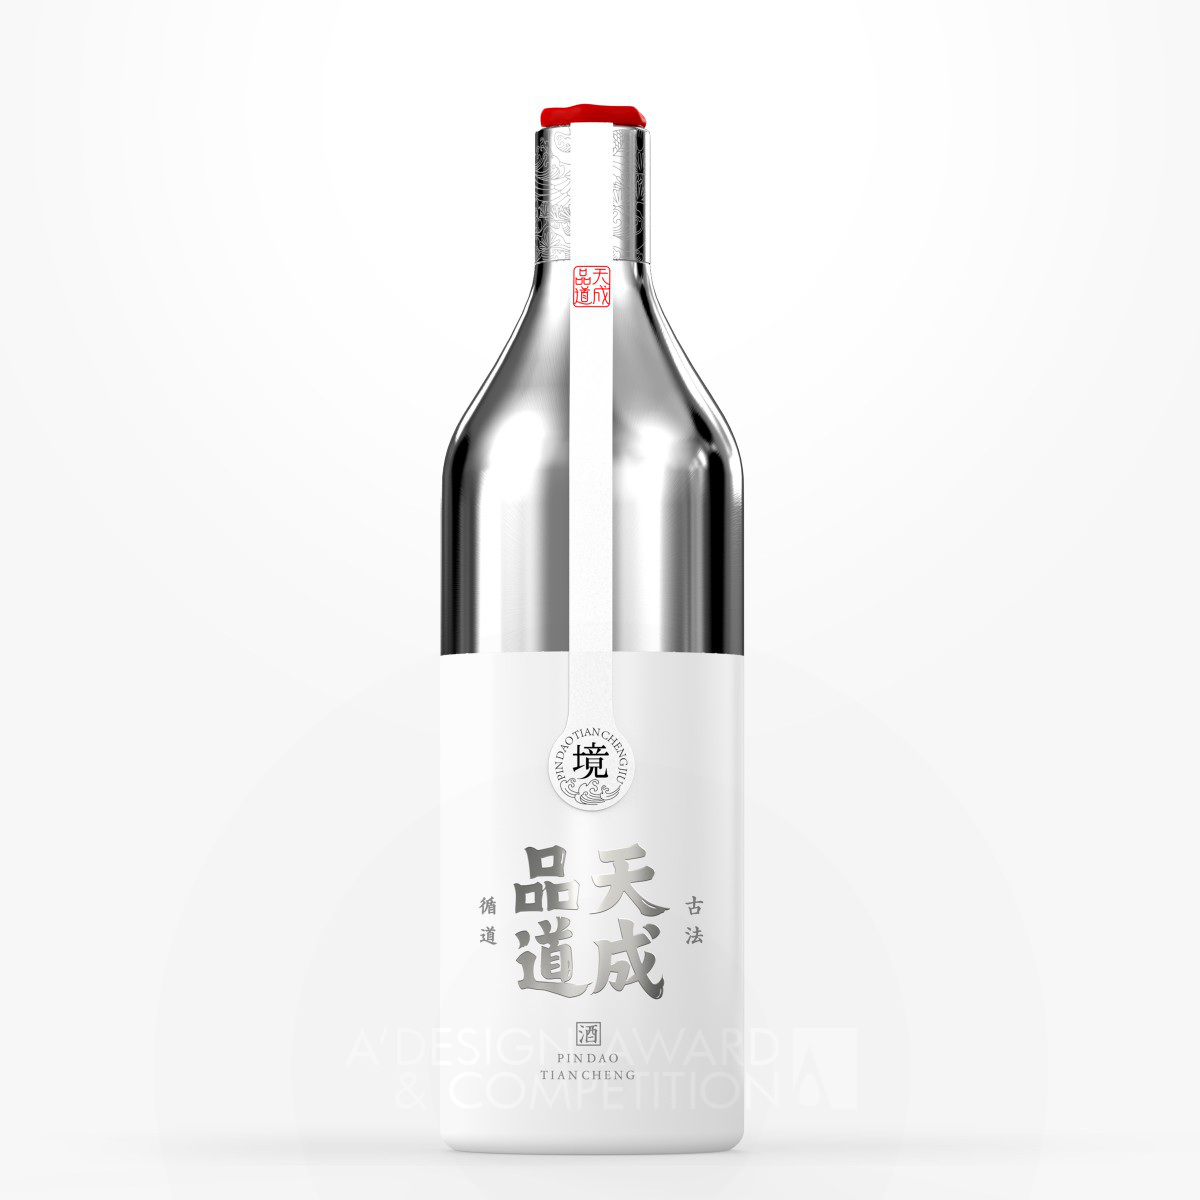 Pindao Tiancheng Liquor Packaging by Jun Li